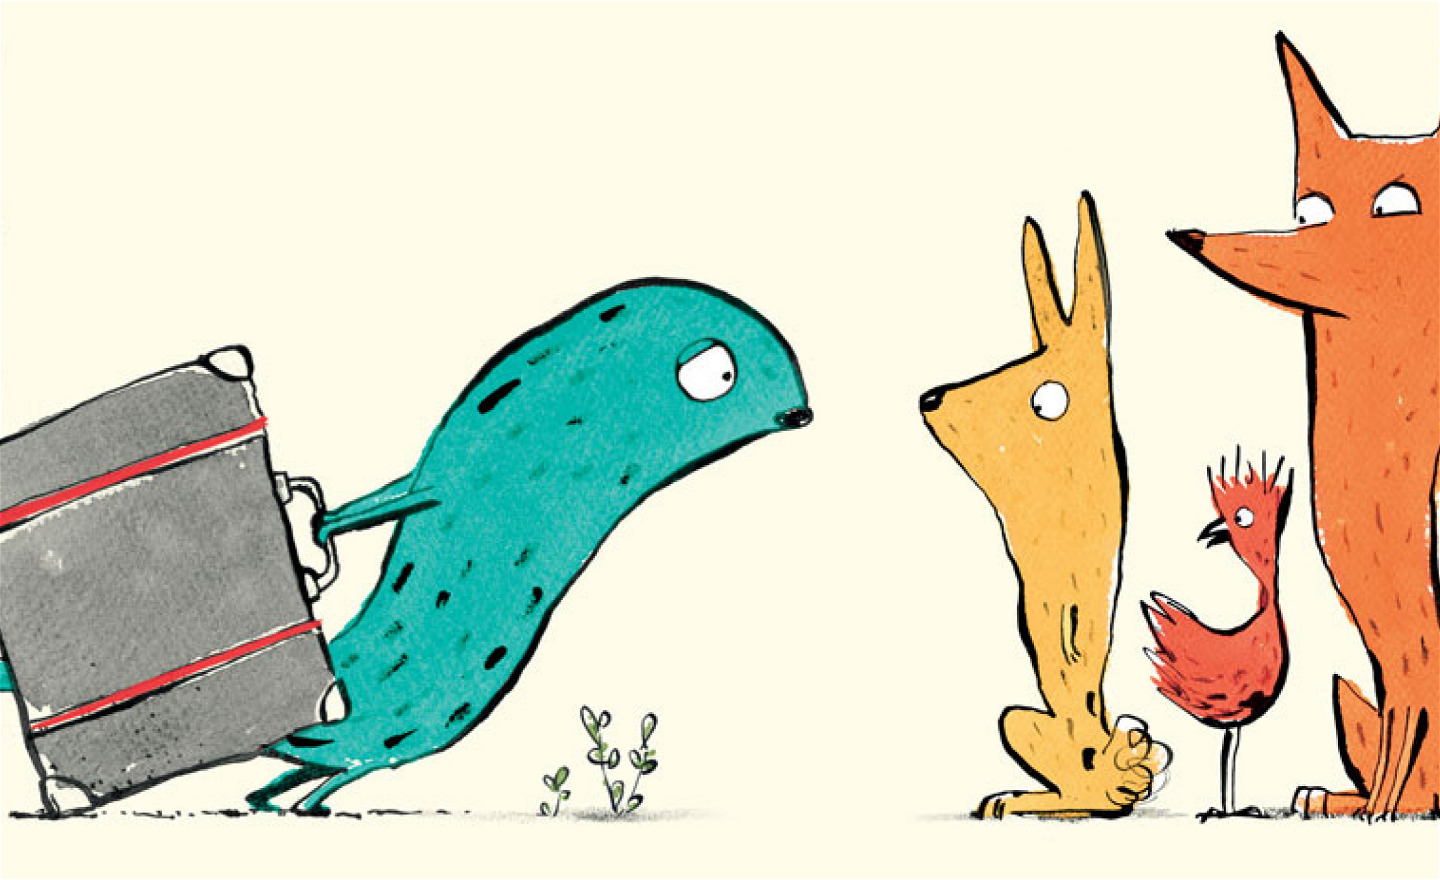 en trött figur med stor resväska möter en hare, en räv och en tupp